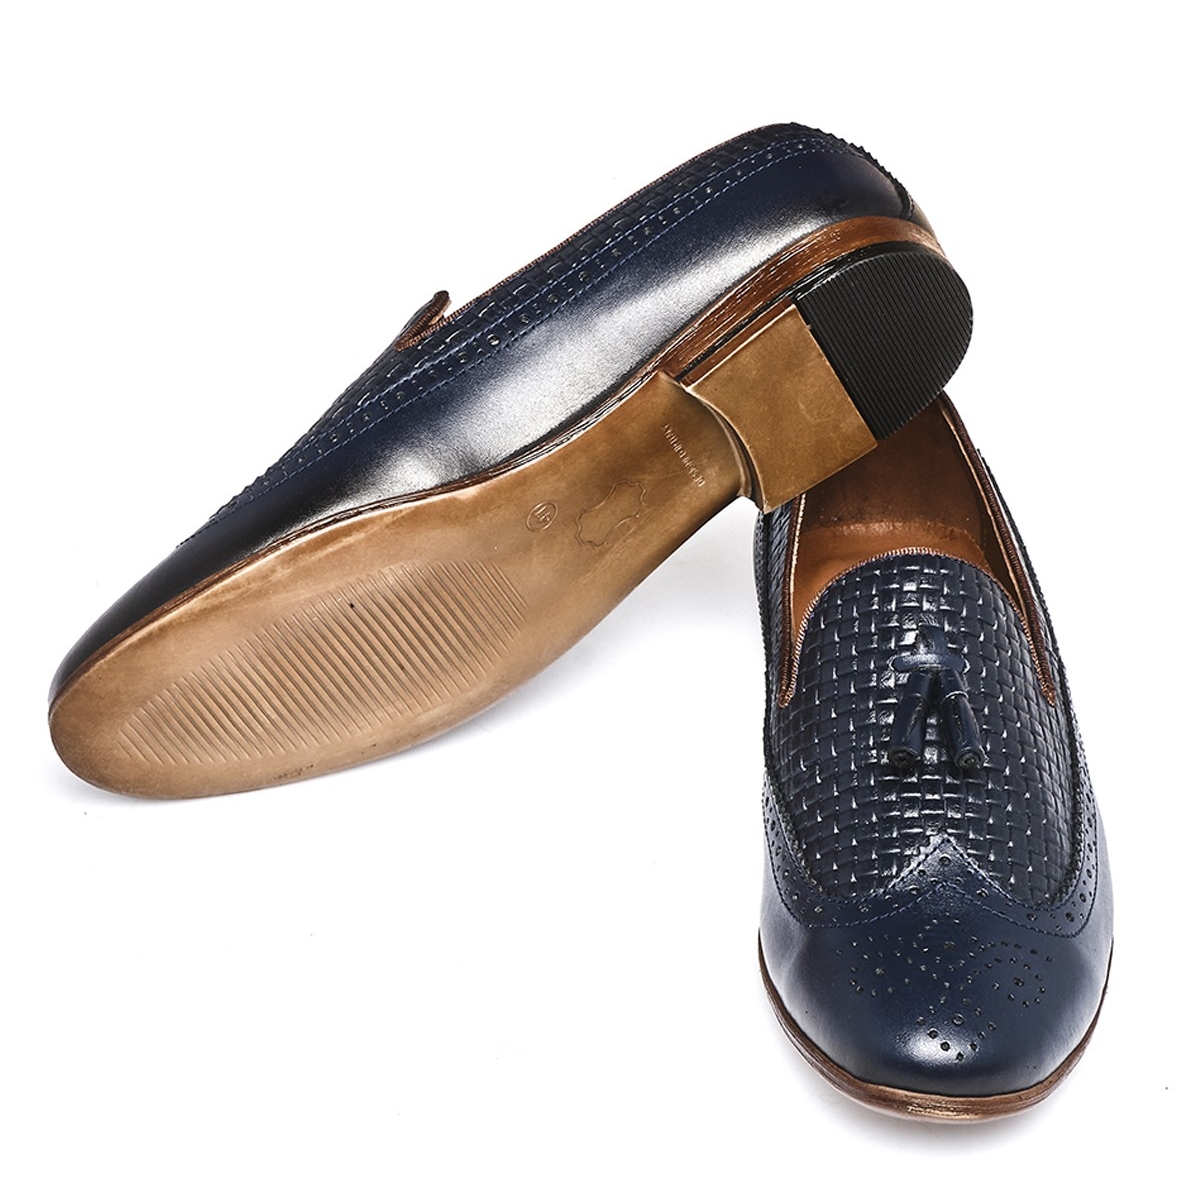 Flo Püsküllü PVC Taban Klasik 008-920 Erkek Ayakkabı. 5